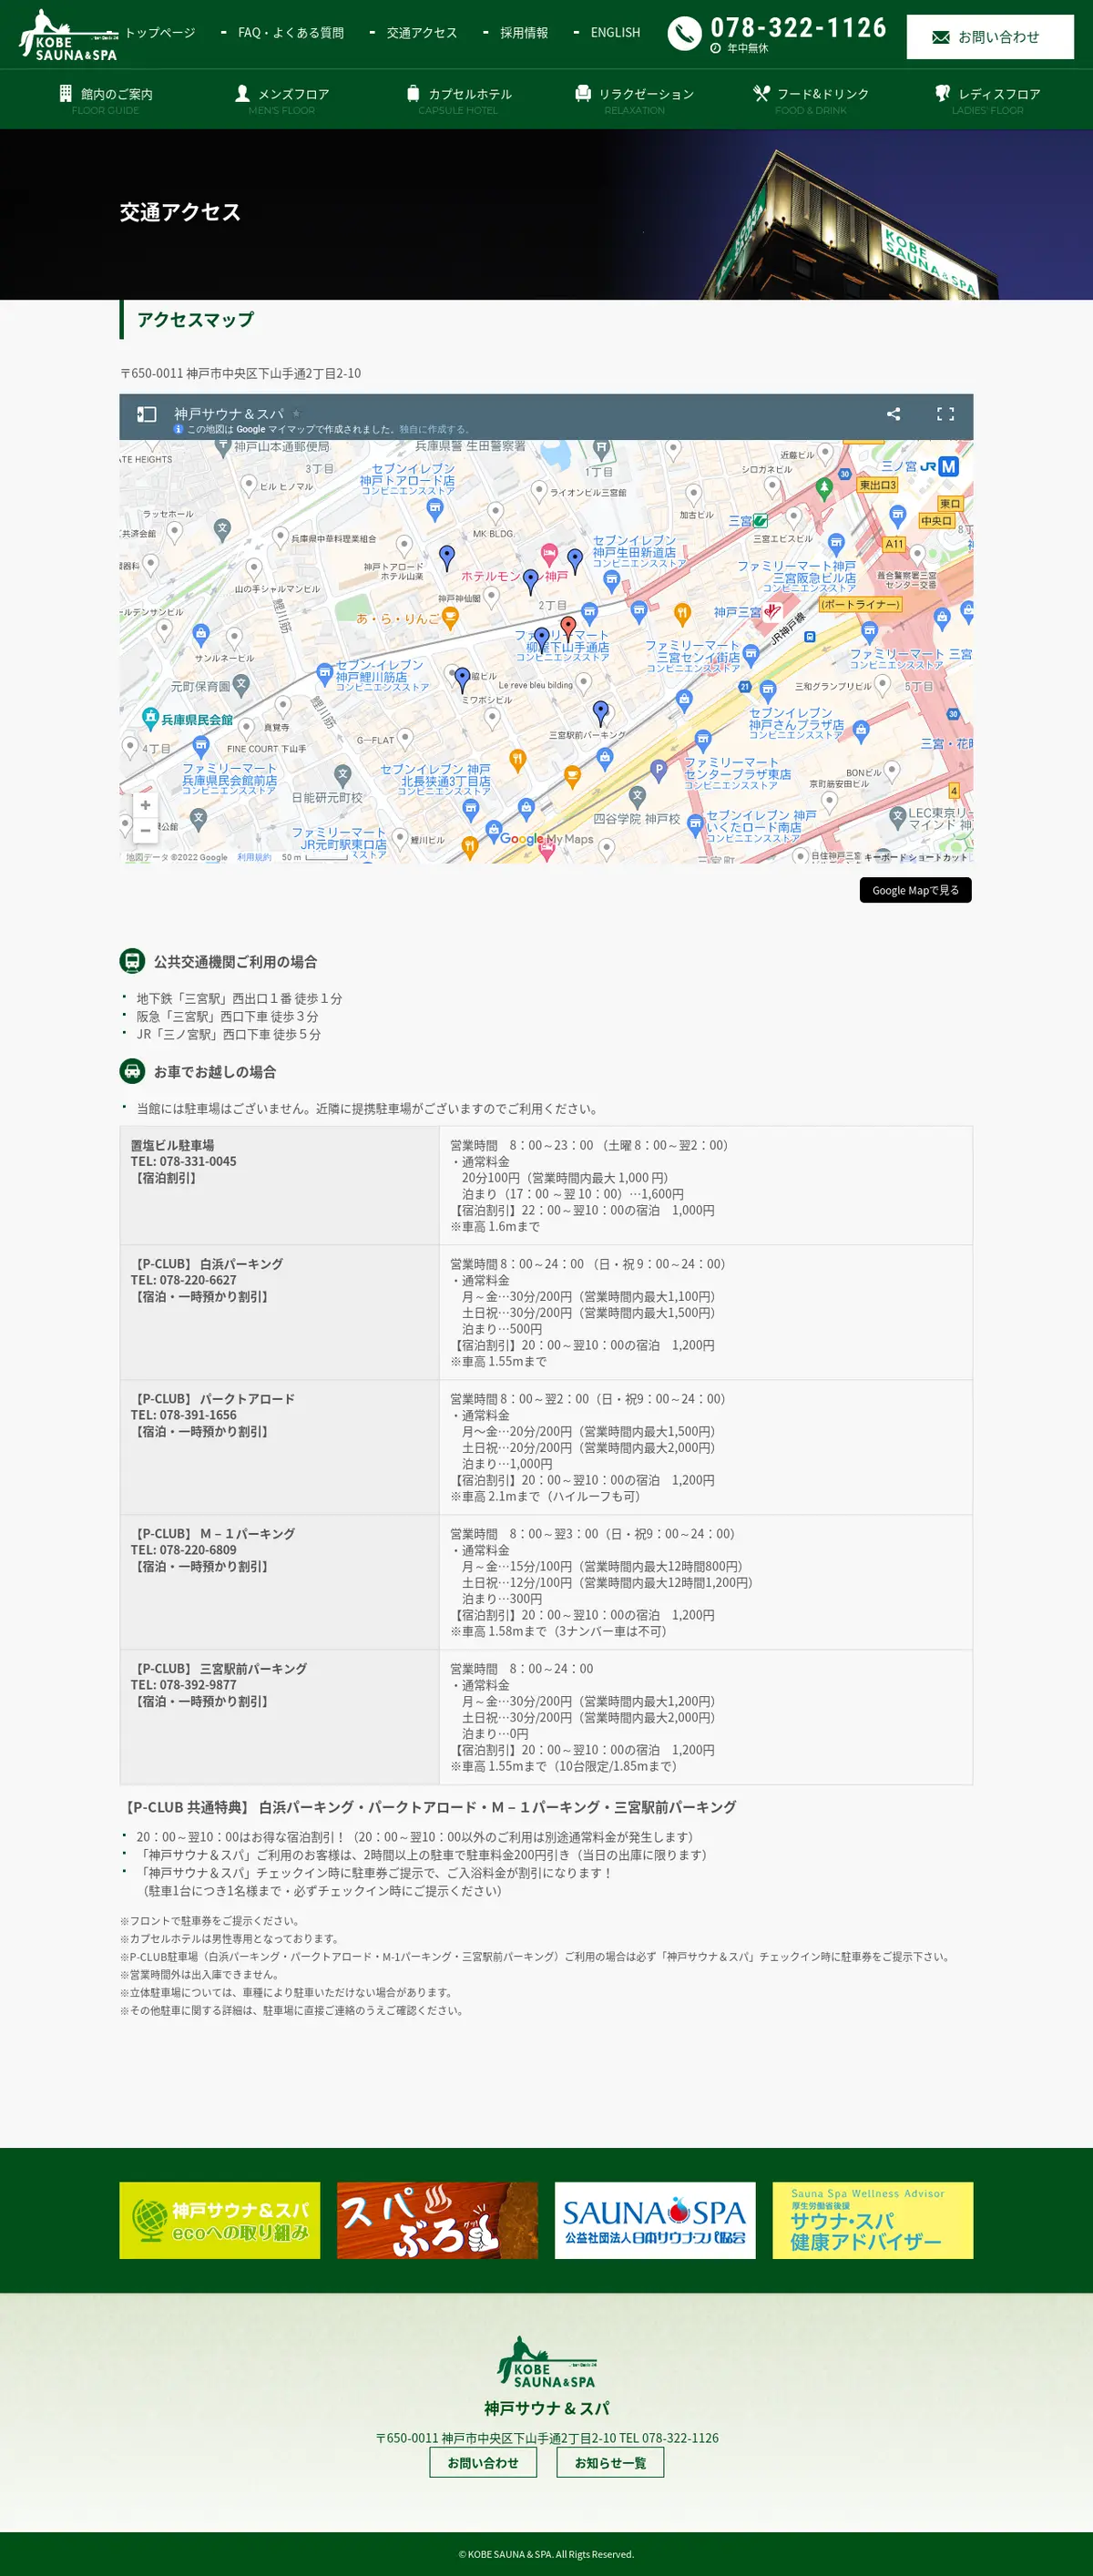 キャプチャ画面 会社名:神戸サウナ & スパプロジェクト名:KOBESAUNA＆SPA 画面名:アクセス・地図・マップ詳細 デバイス名:PCカテゴリ:旅行・ホテル・旅館タグ:アクセス・地図・マップ詳細,PC